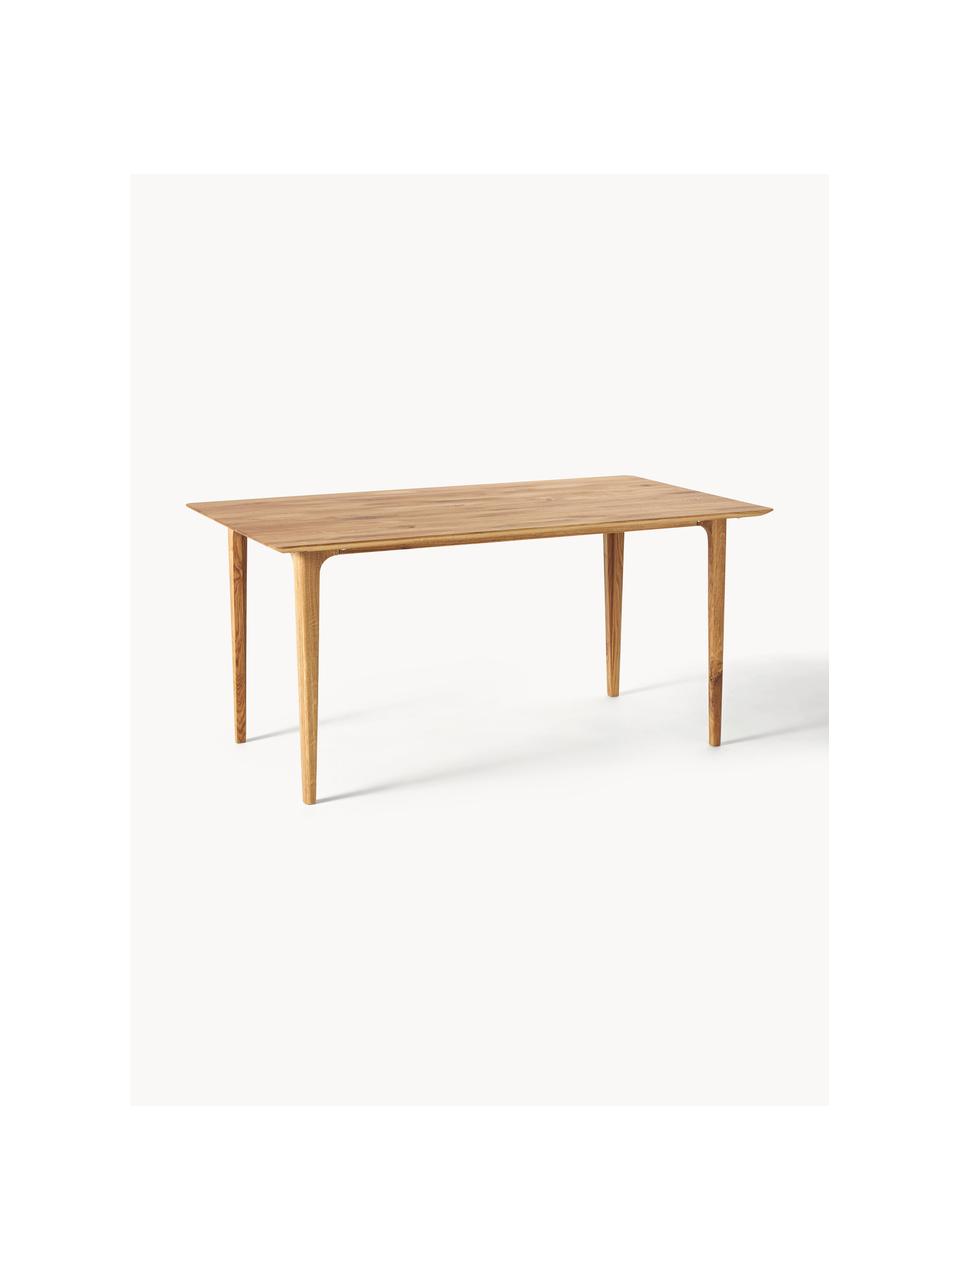 Stół do jadalni z drewna dębowego Archie, różne rozmiary, Lite drewno dębowe olejowane, Drewno dębowe, S 180 x G 90 cm